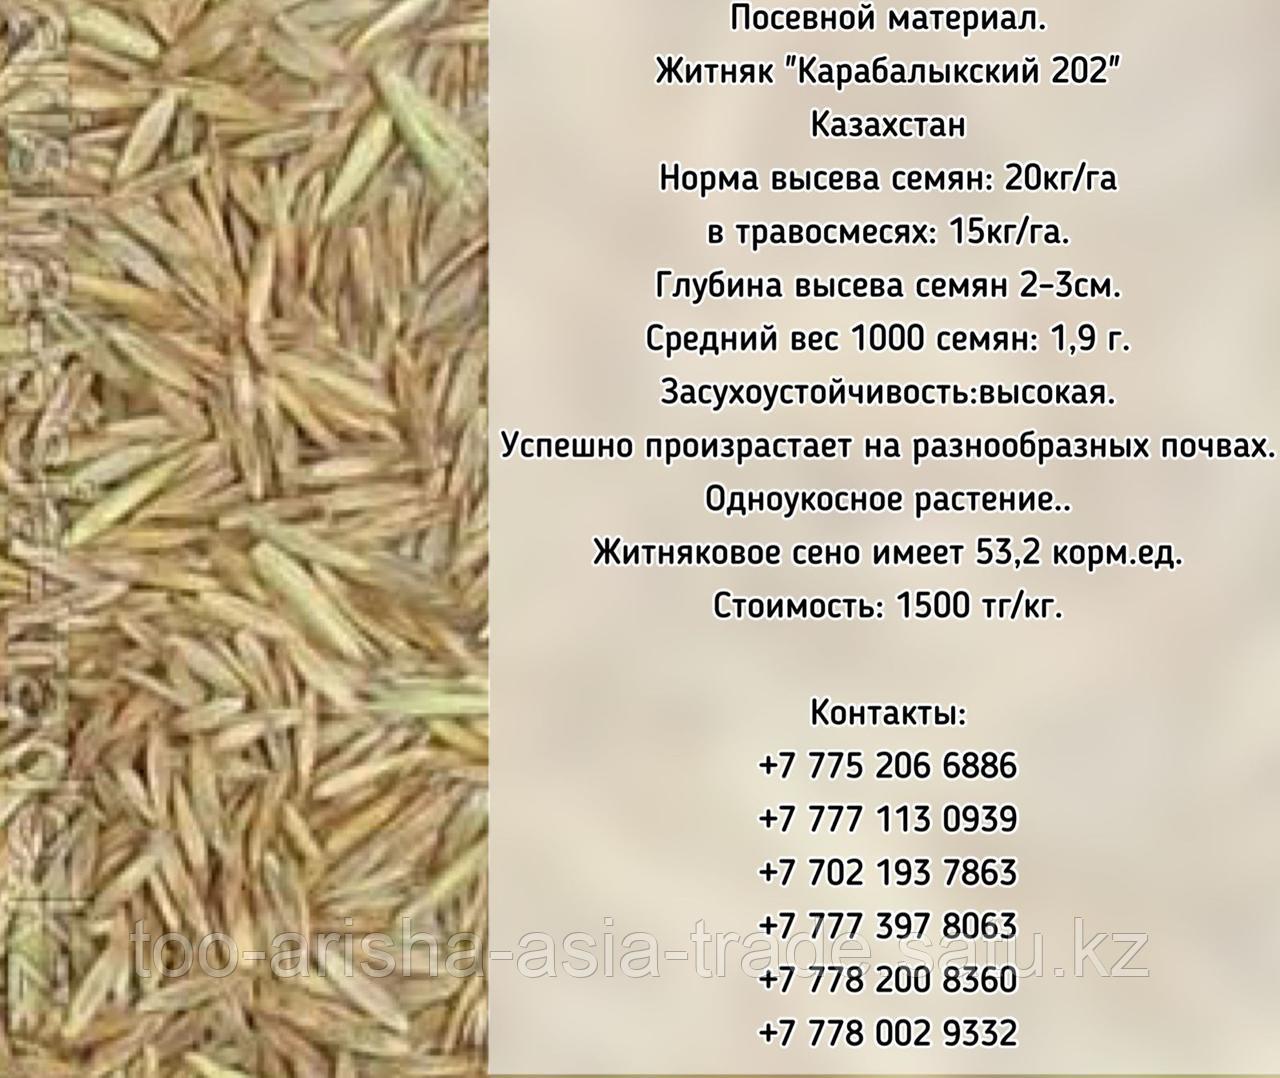 Семена сорт Житняк "Карабалыкский 202", "Батыр" элита Казахстан